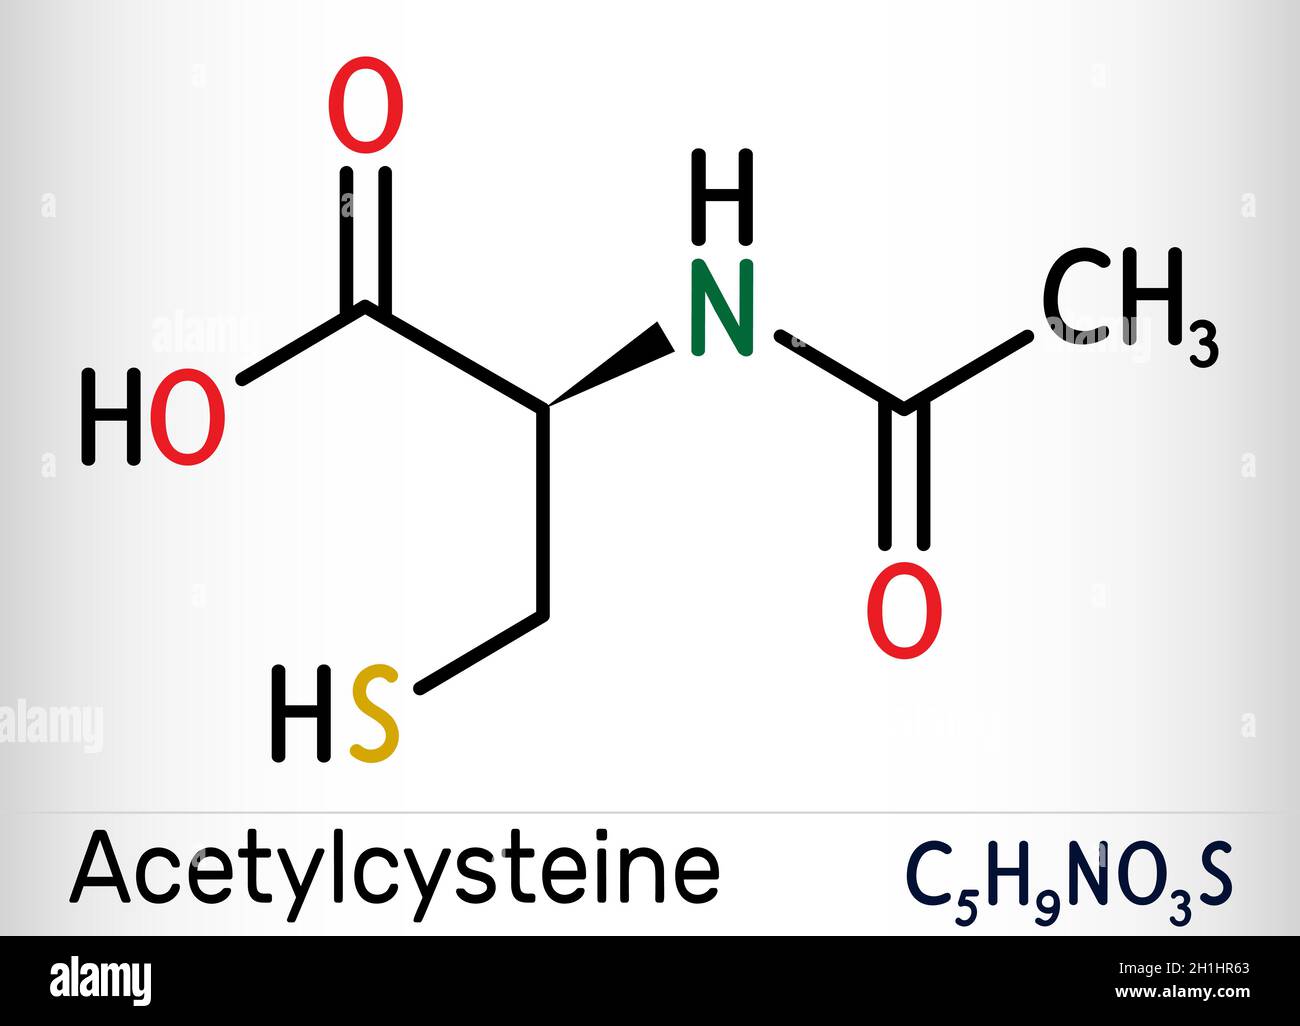 Se puede tomar frenadol y acetilcisteina